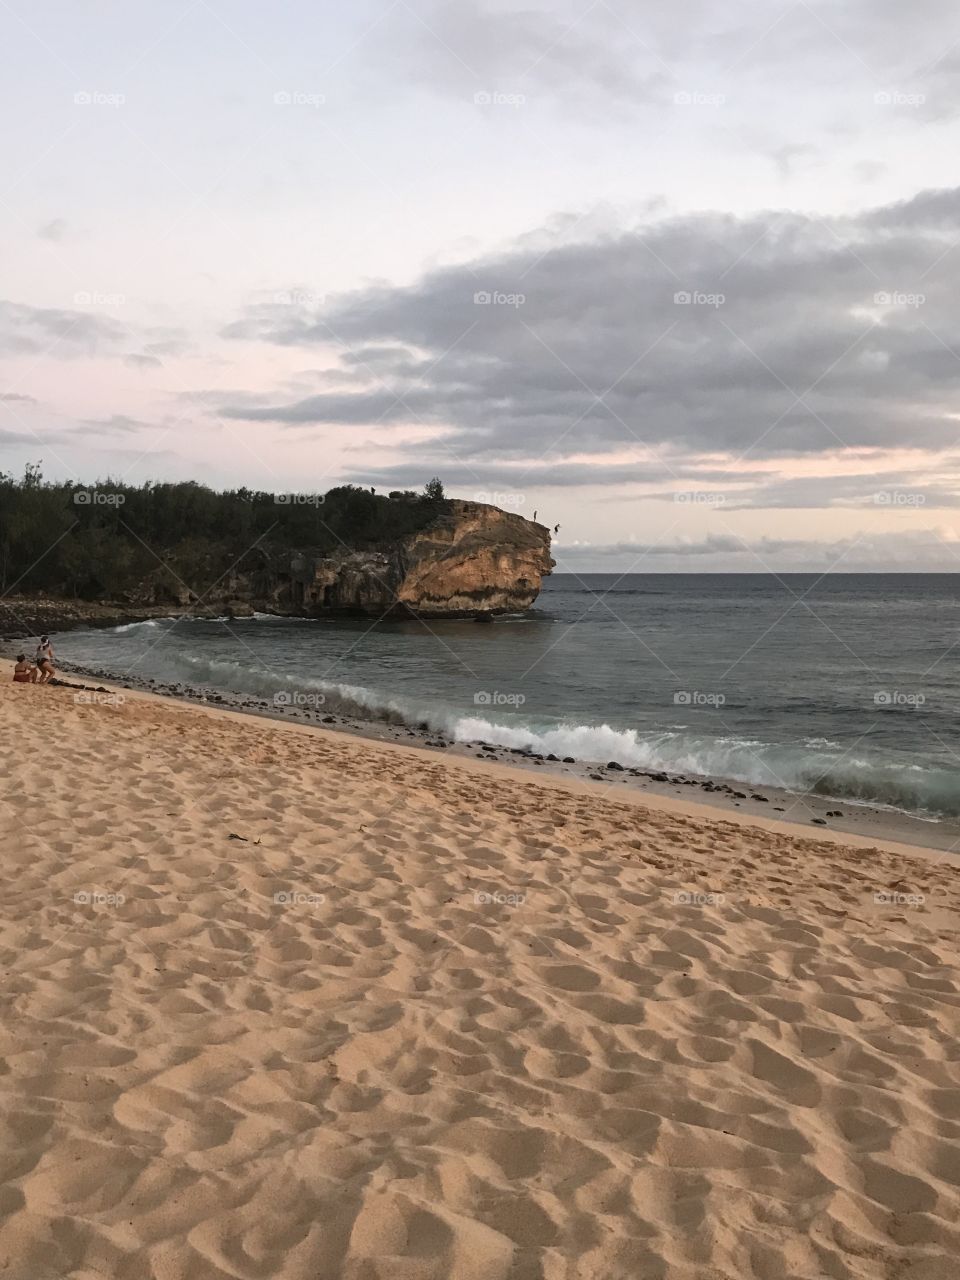 Cliff diving at dusk Poipu Beach